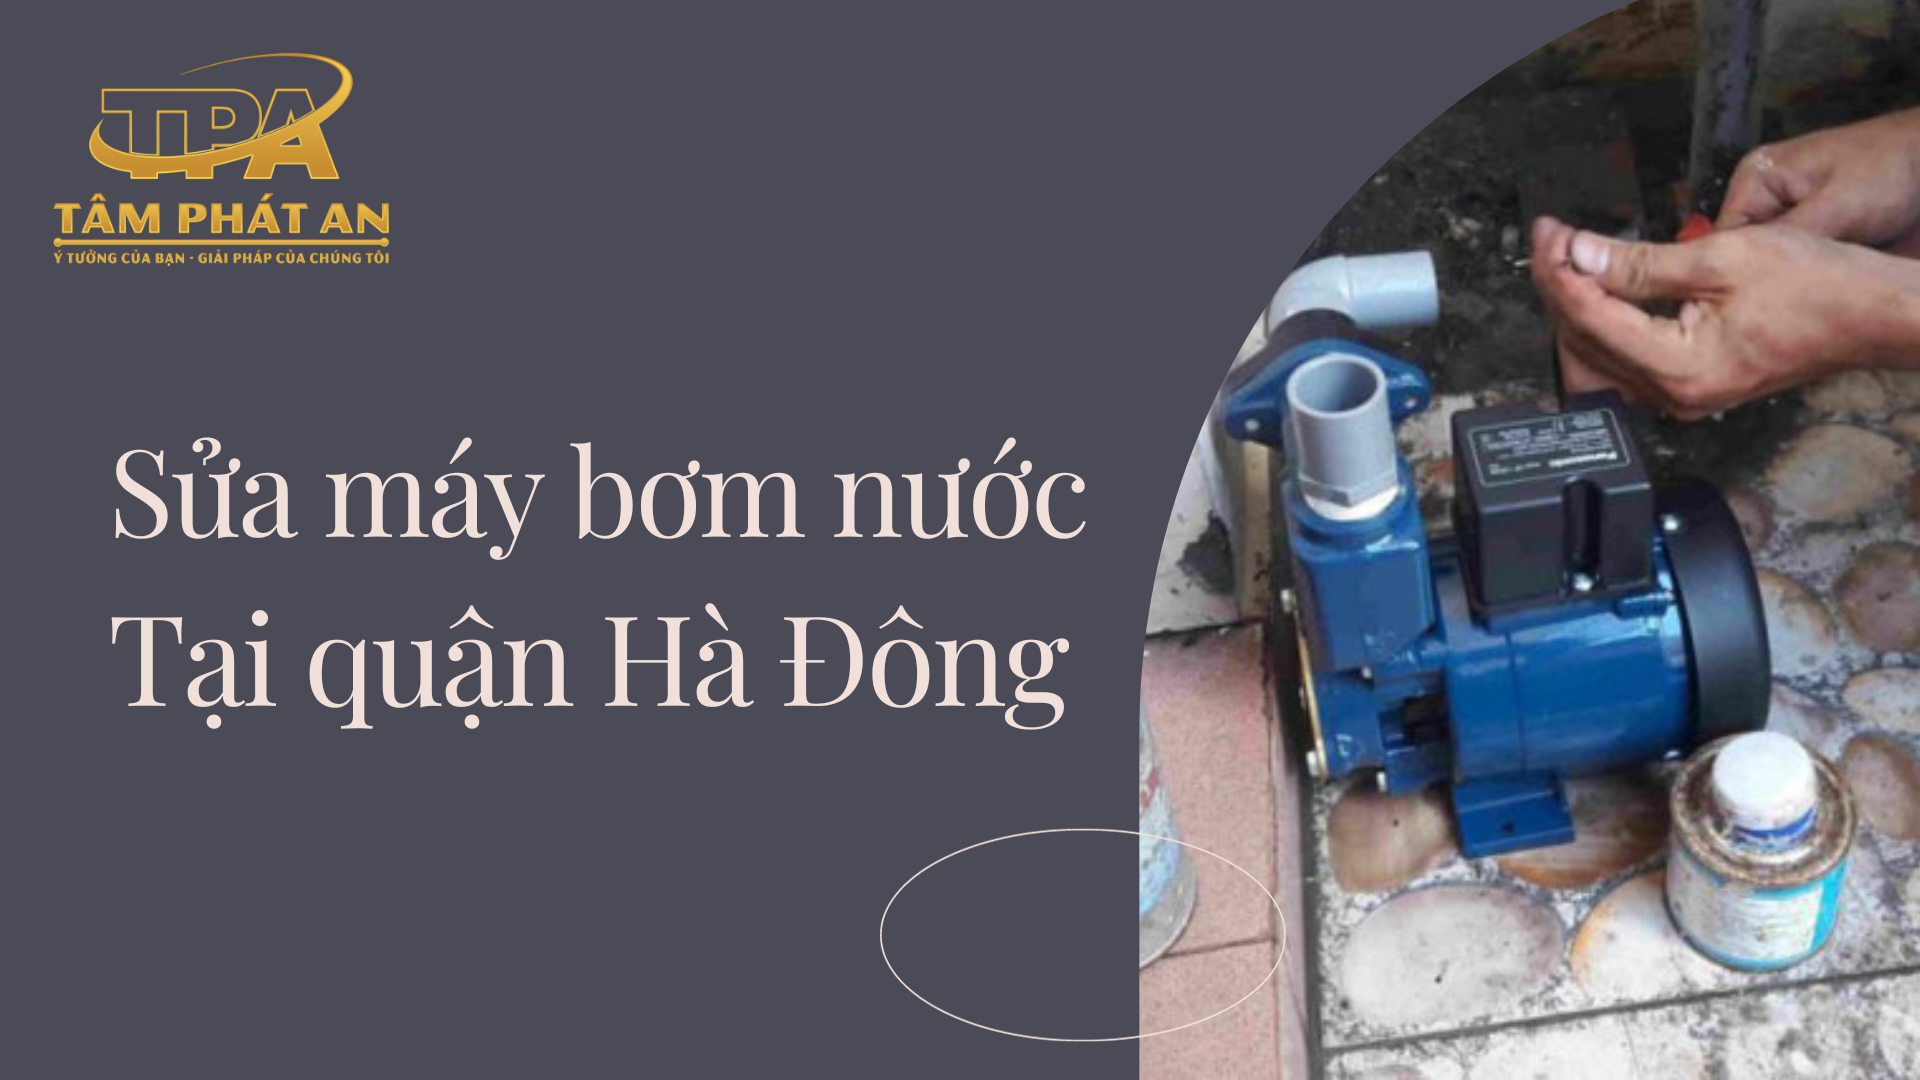 Gọi thợ sửa máy bơm nước tại quận Hà Đông| 0969384448